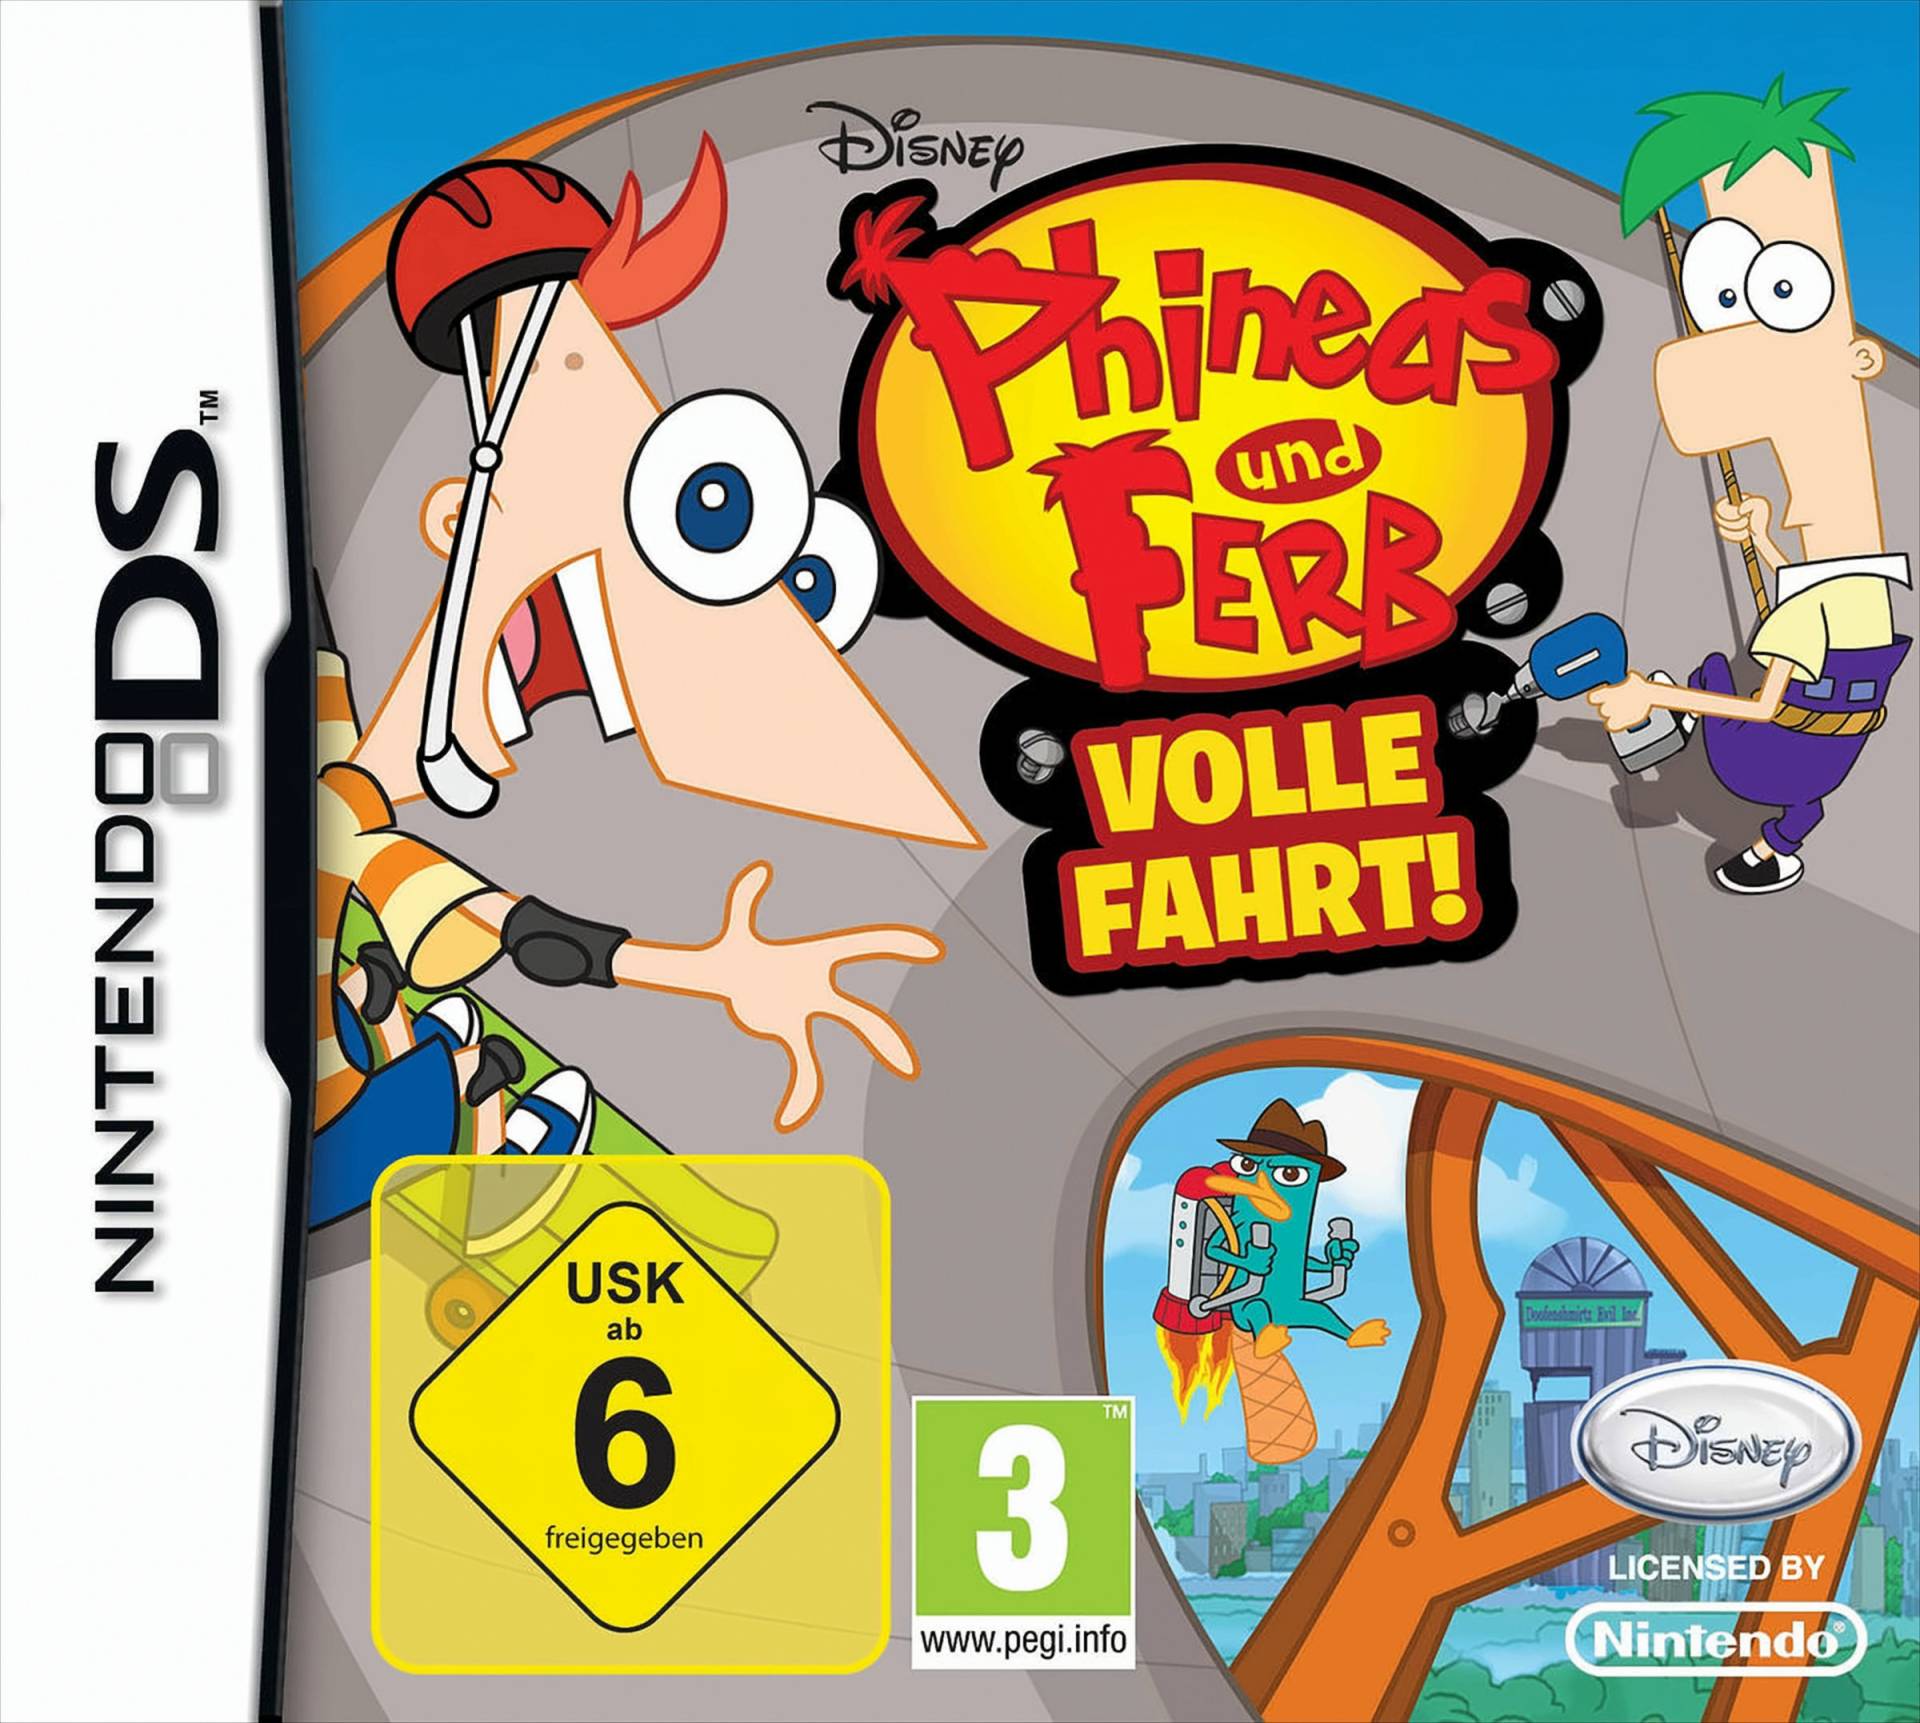 Phineas und Ferb: Volle Fahrt von Disney Interactive Studios